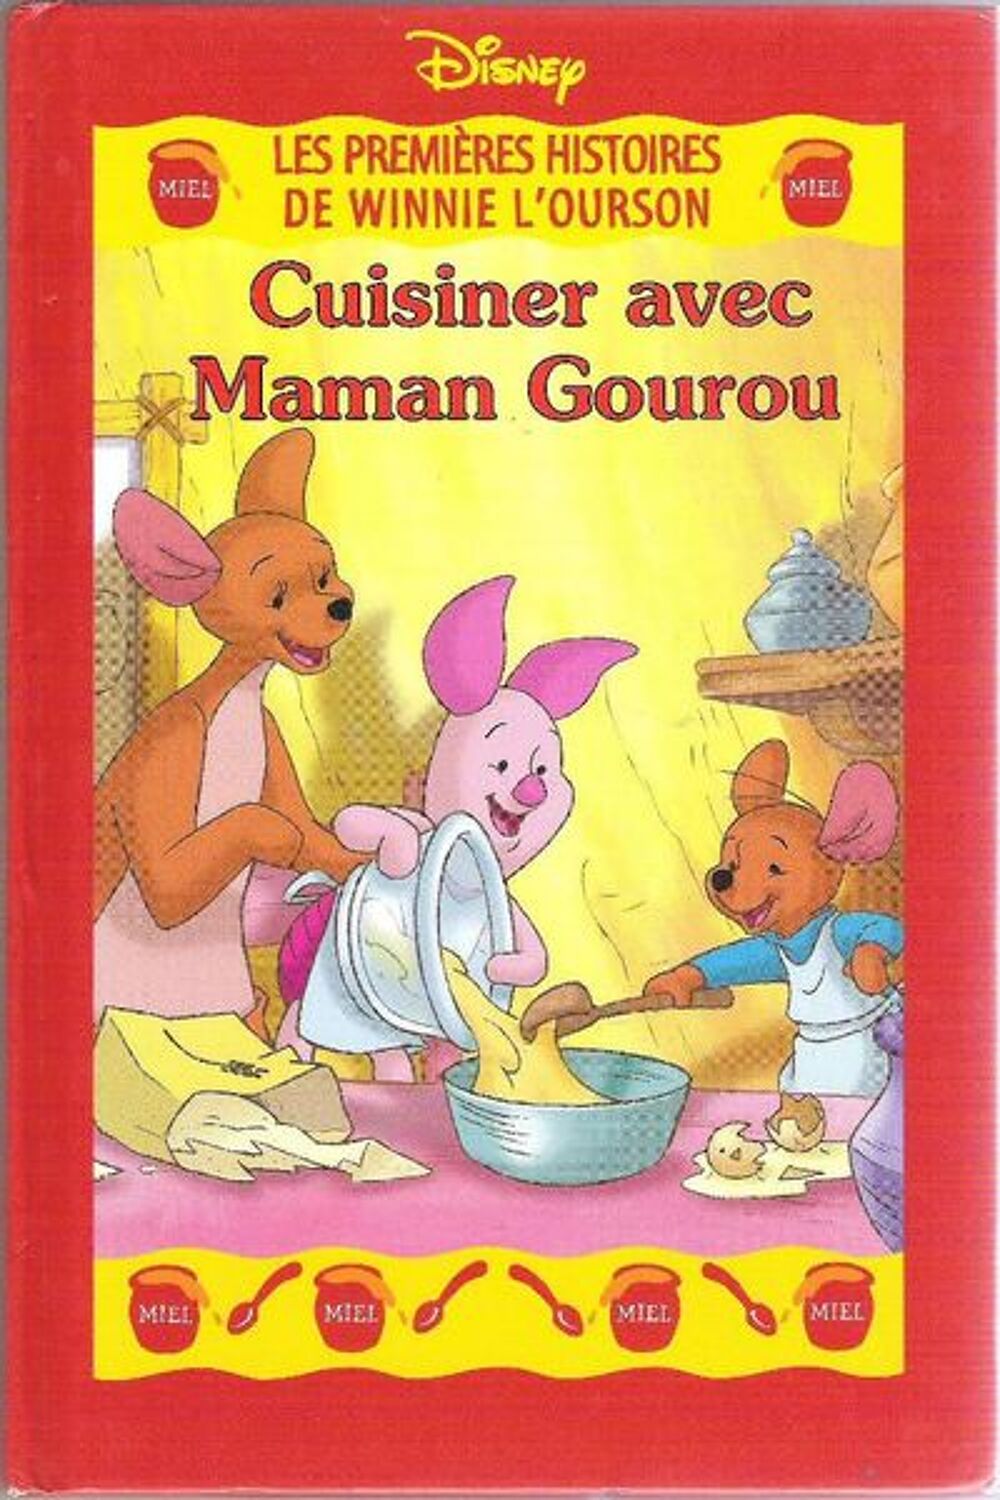 Winnie l'Ourson : Cuisiner avec Maman Gourou (Disney) Livres et BD